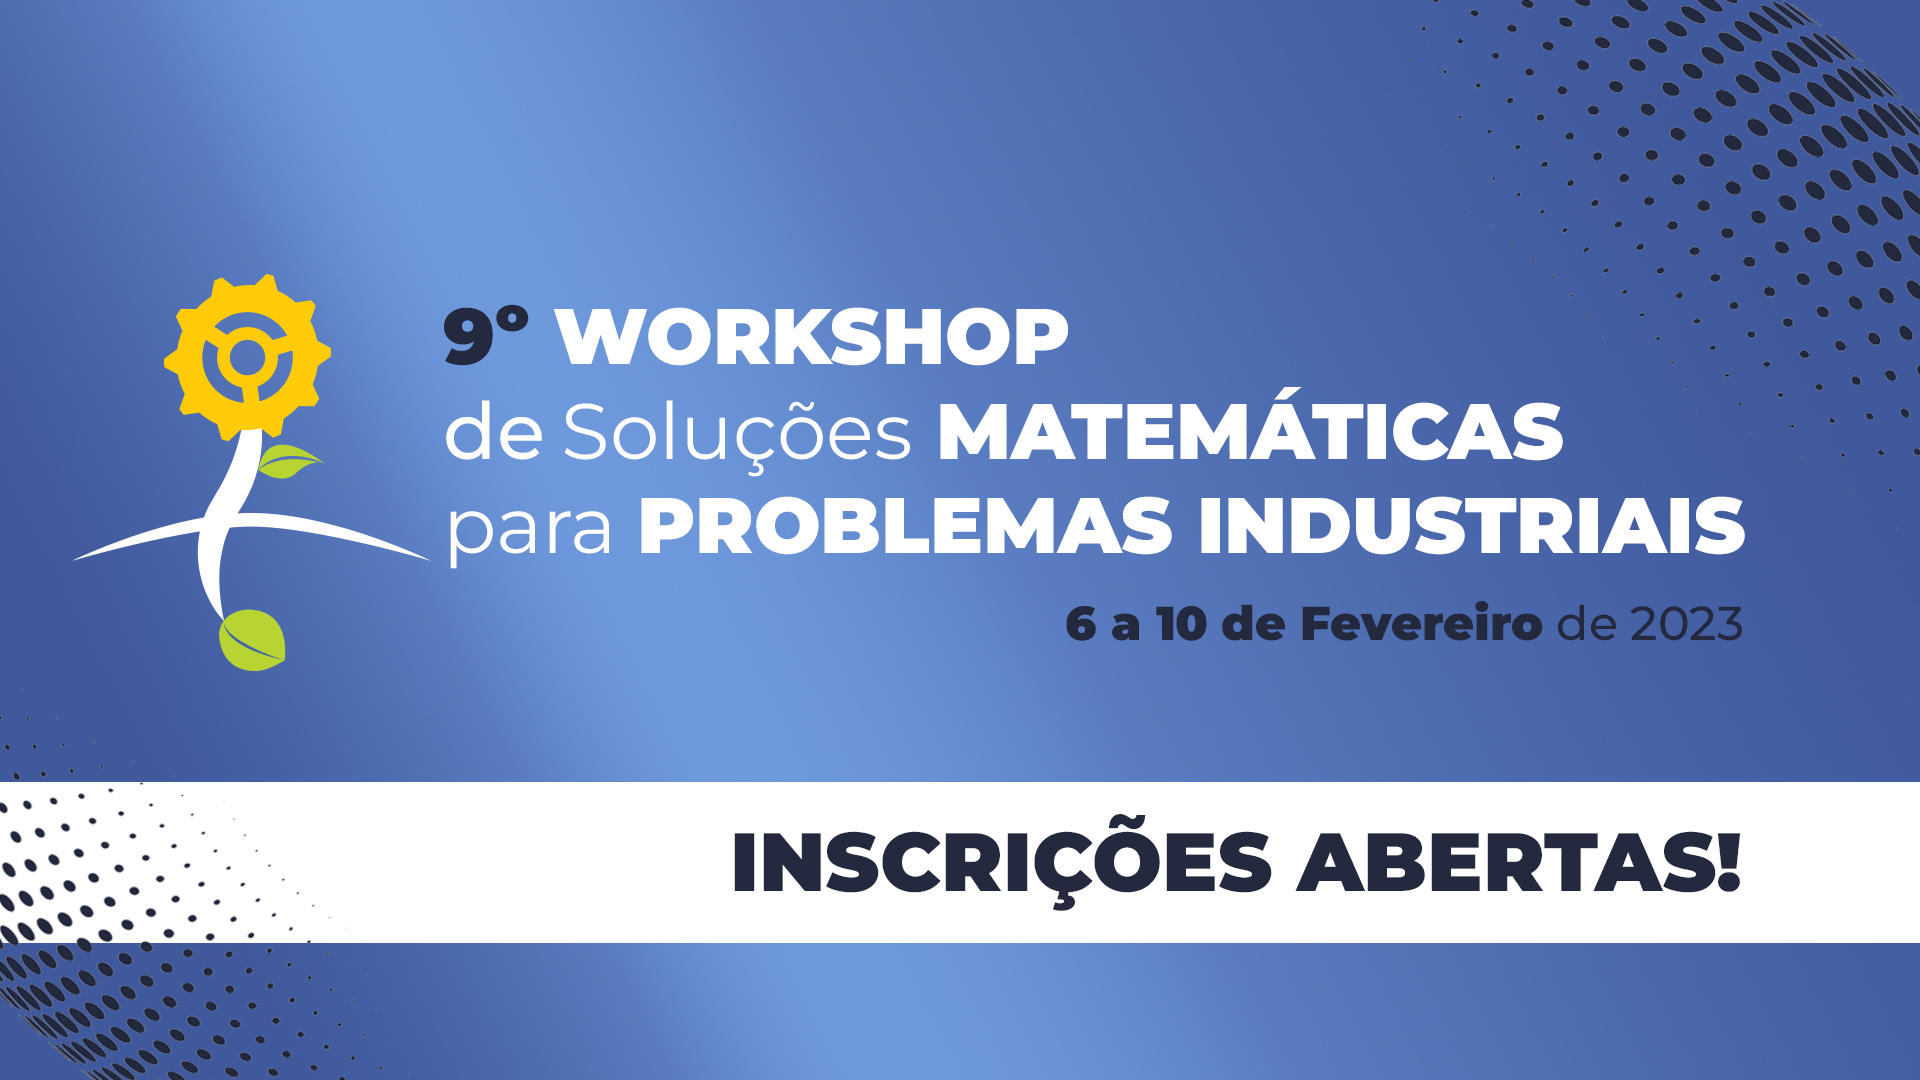 Inscrições abertas para o 9º Workshop de Soluções Matemáticas para Problemas Industriais